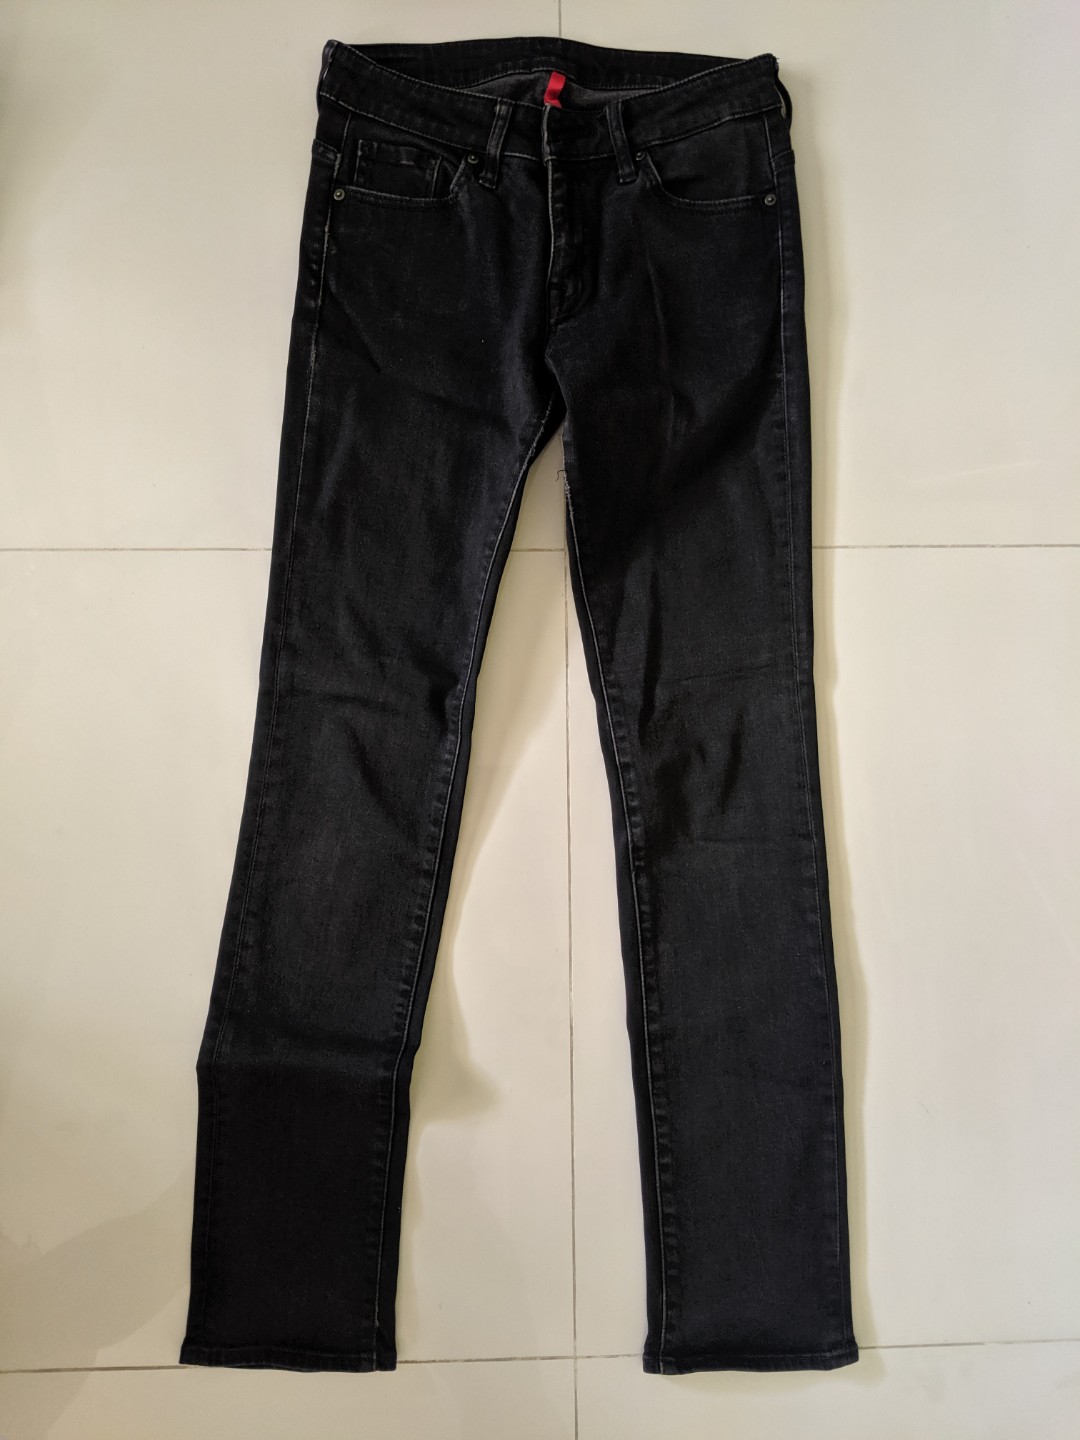 Uniqlo black jeans